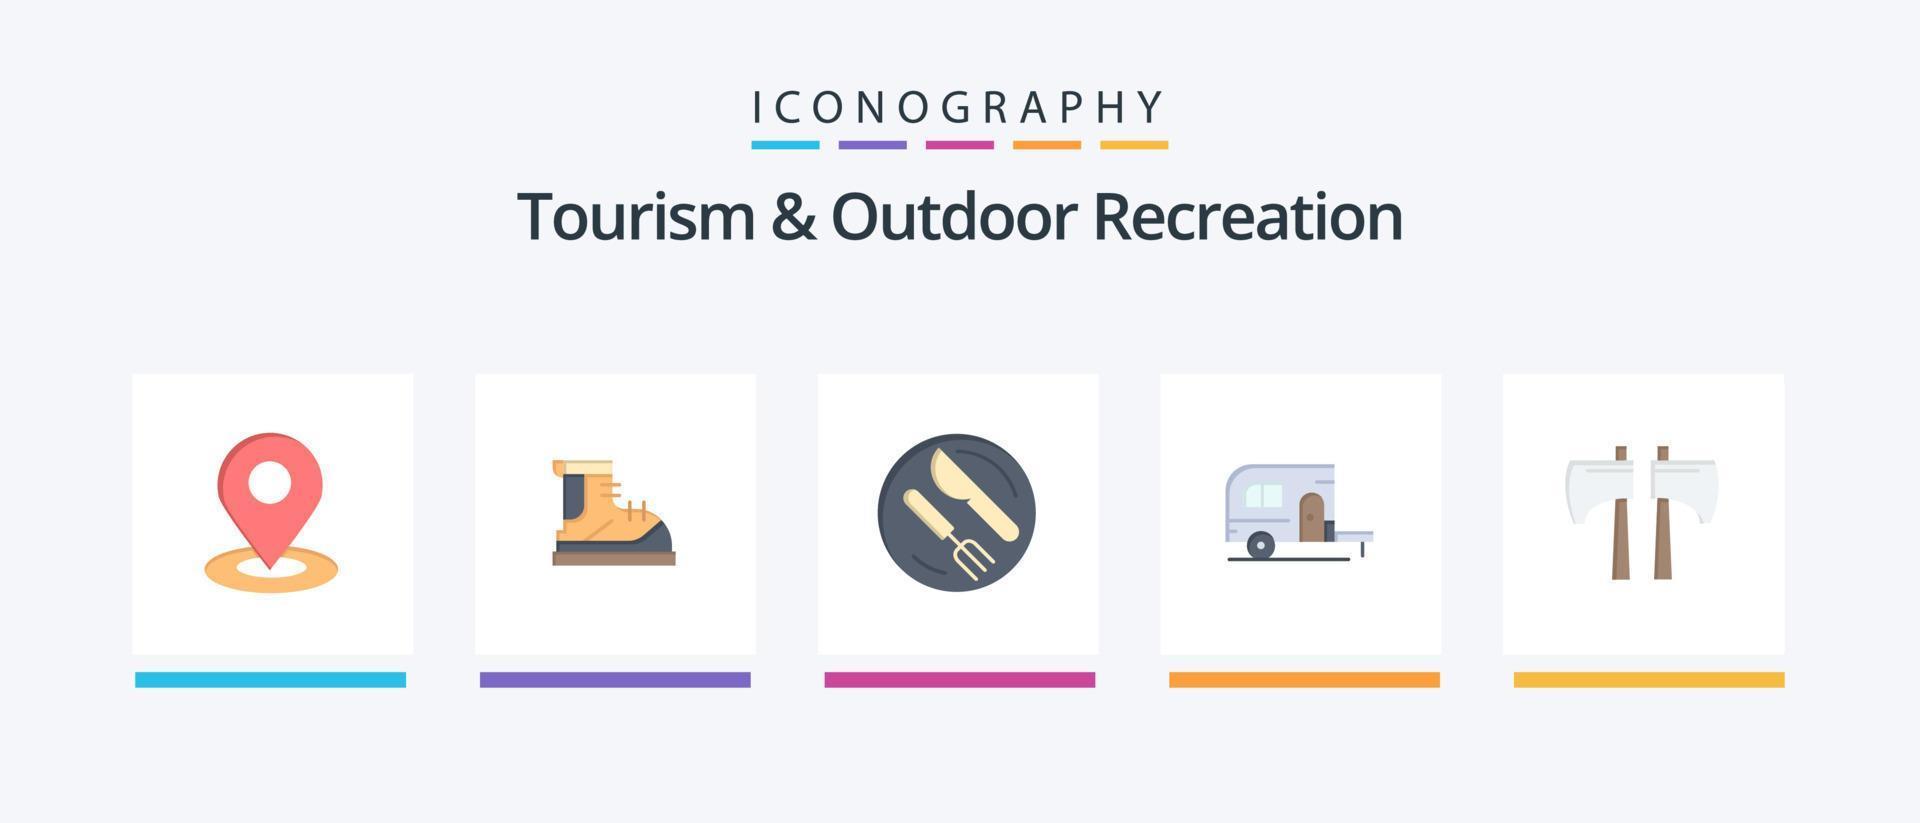 turismo e recreação ao ar livre flat 5 icon pack incluindo machado. acampamento. bota. acampamento. faca. design de ícones criativos vetor